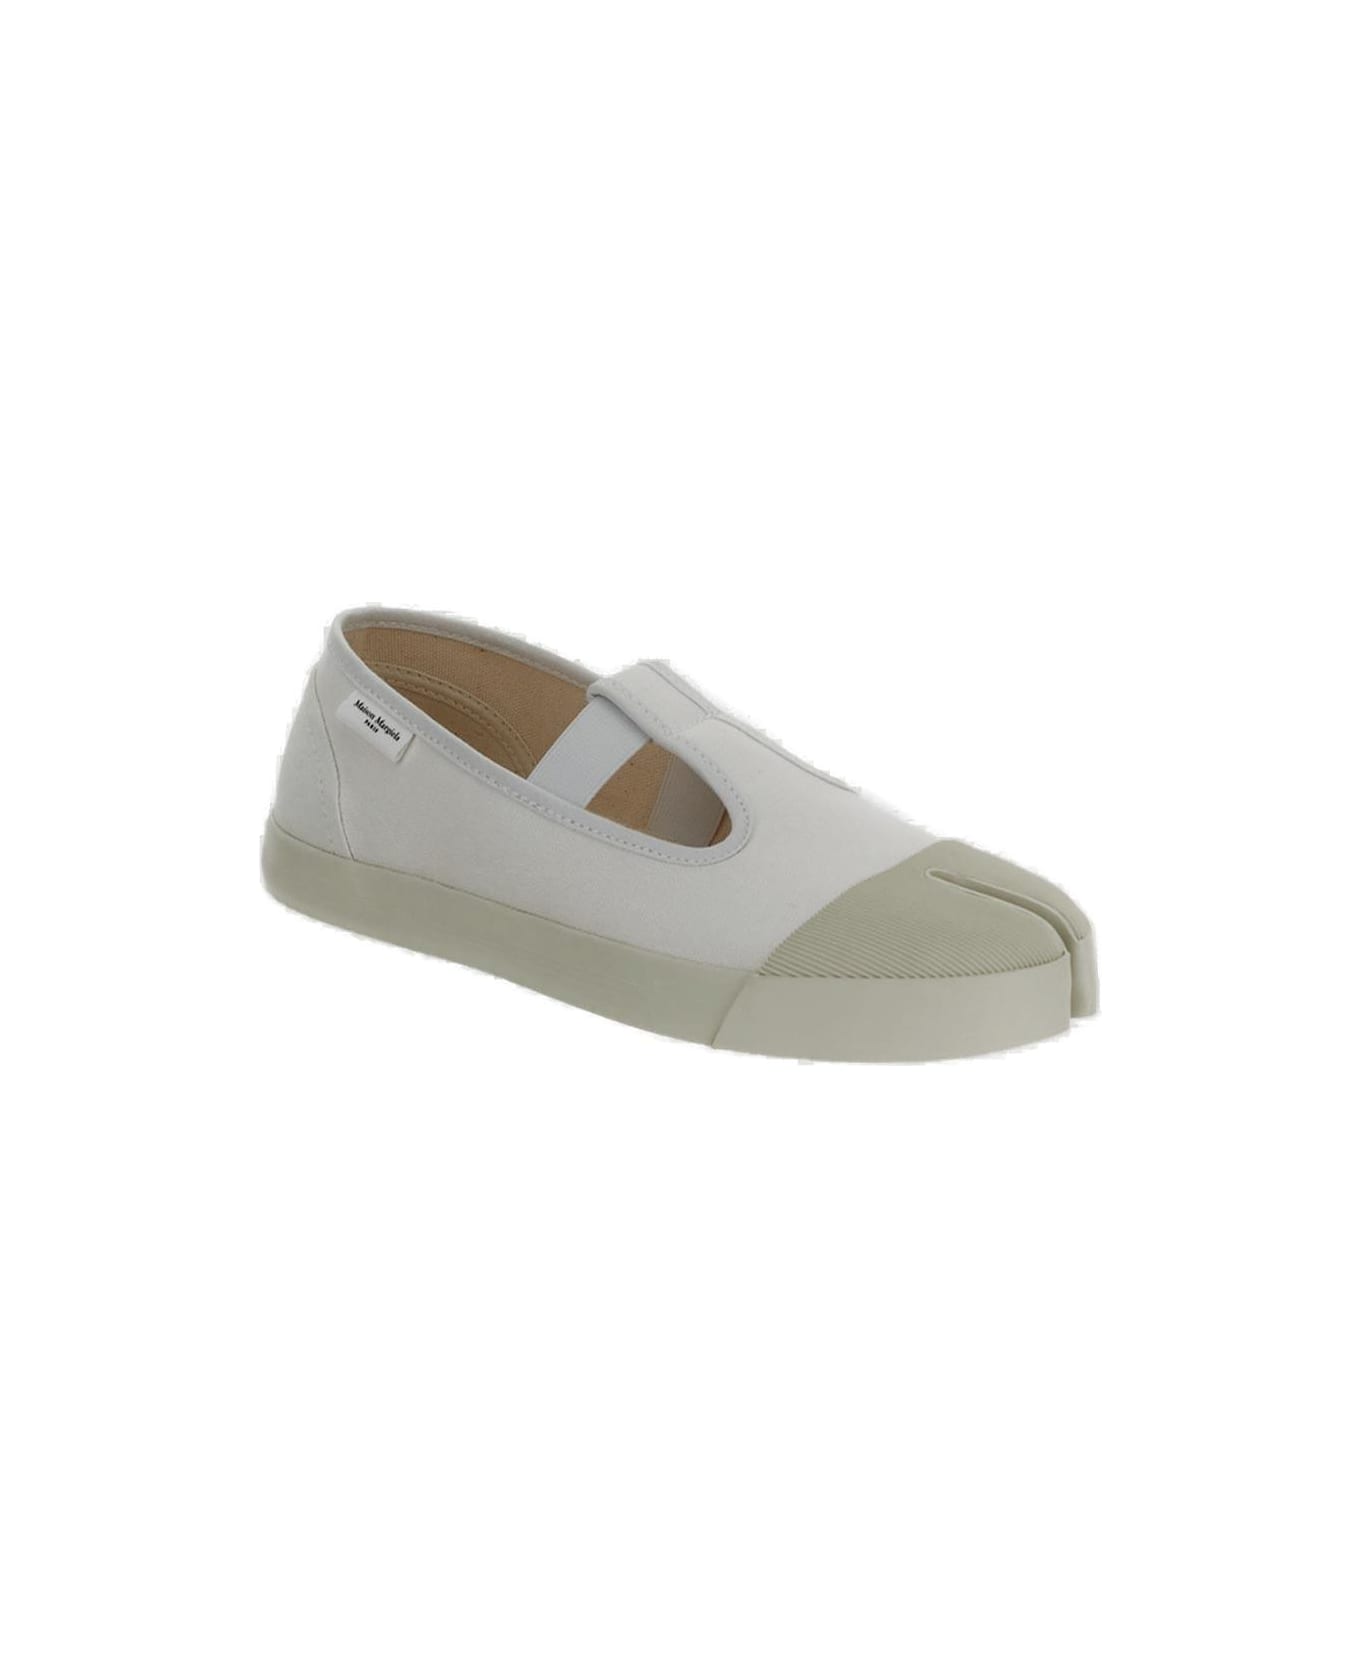 Maison Margiela On The Deck Tabi Mary Jane Shoes - WHITE フラットシューズ